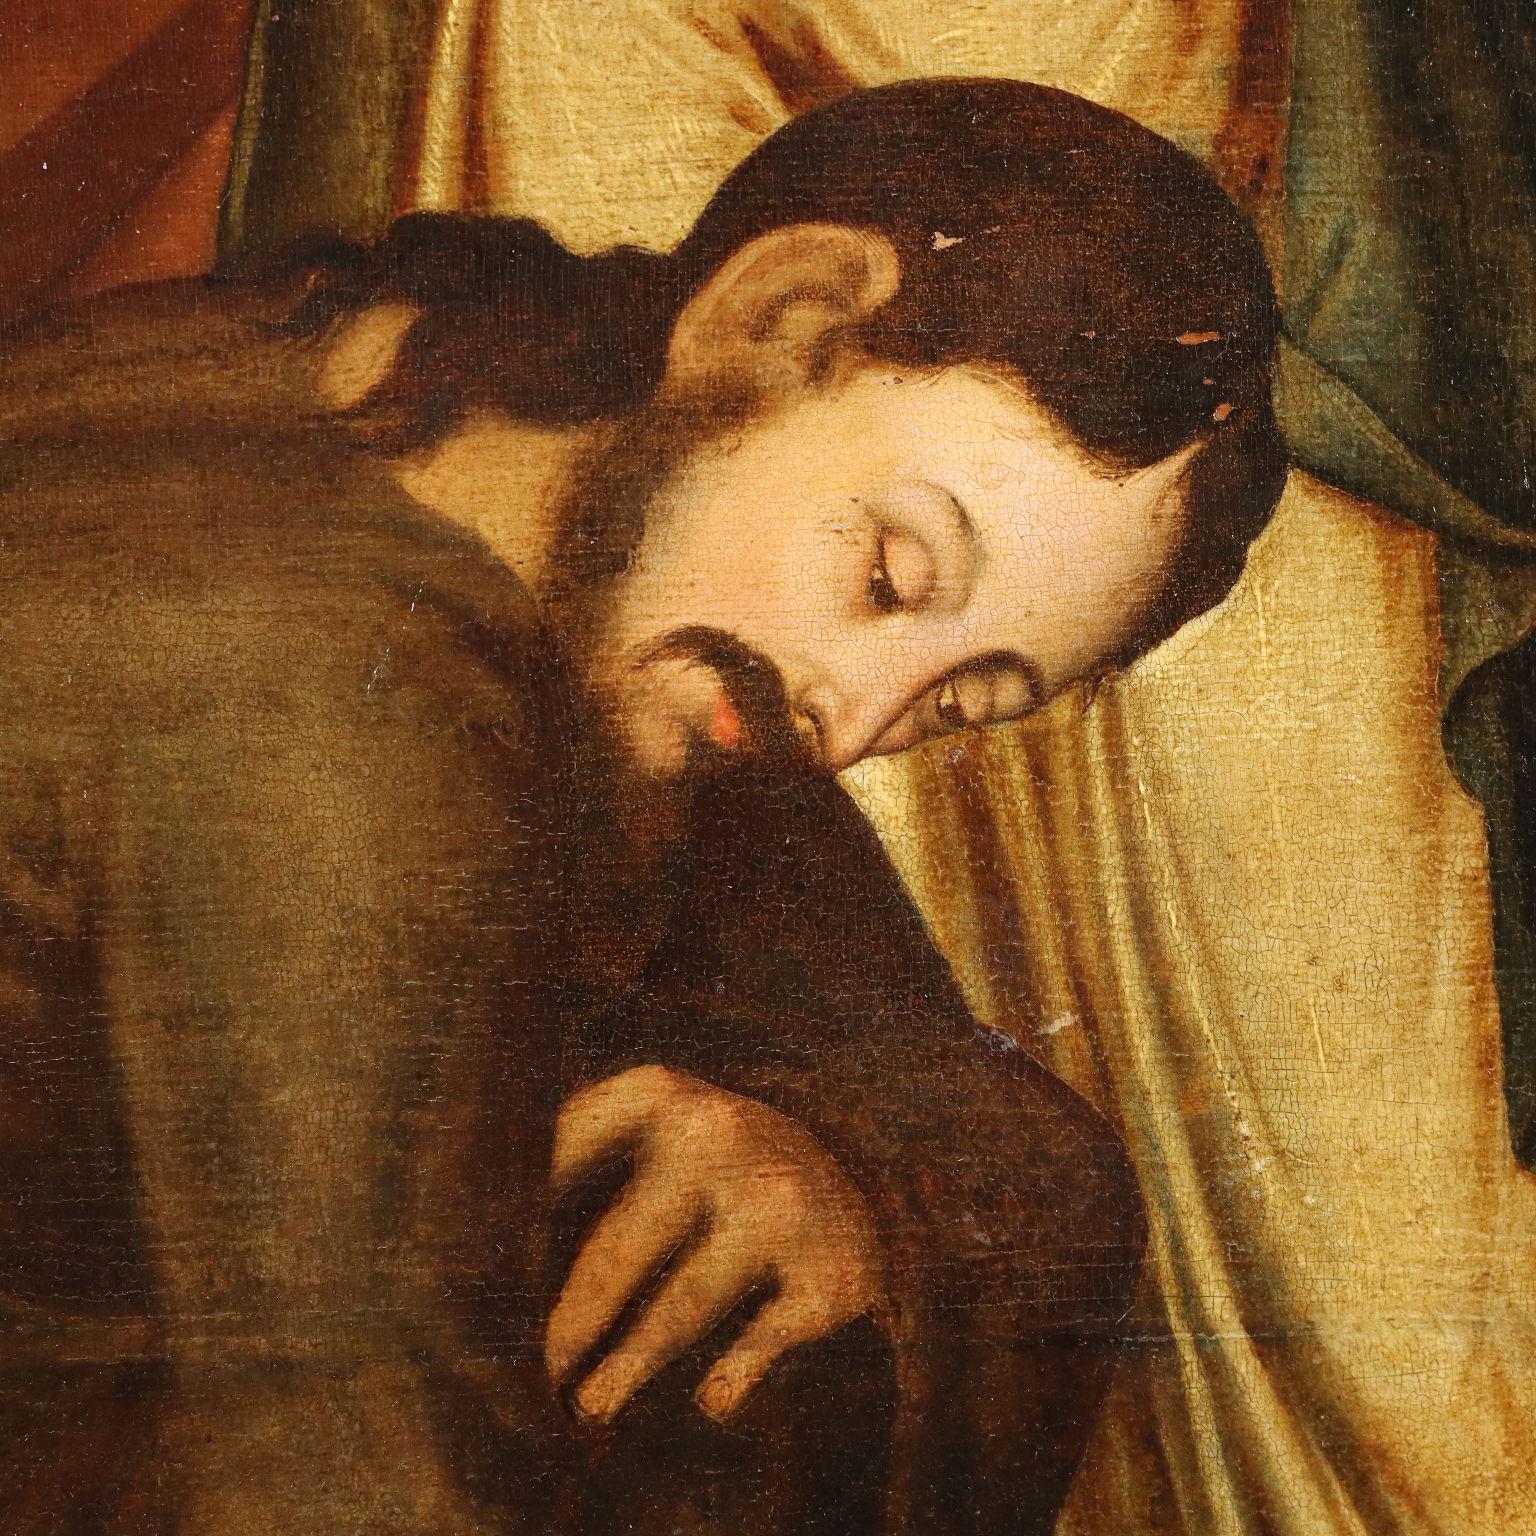 Öl auf Platte. Flämische Schule des 16. Jahrhunderts.
Das Werk trägt am Sockel eine Tafel, die es Lambert Van Noort (1520 -1571) zuschreibt, was durch die Nähe zu seinem Malstil in den Gesichtern von Jesus und Maria Magdalena gerechtfertigt ist,